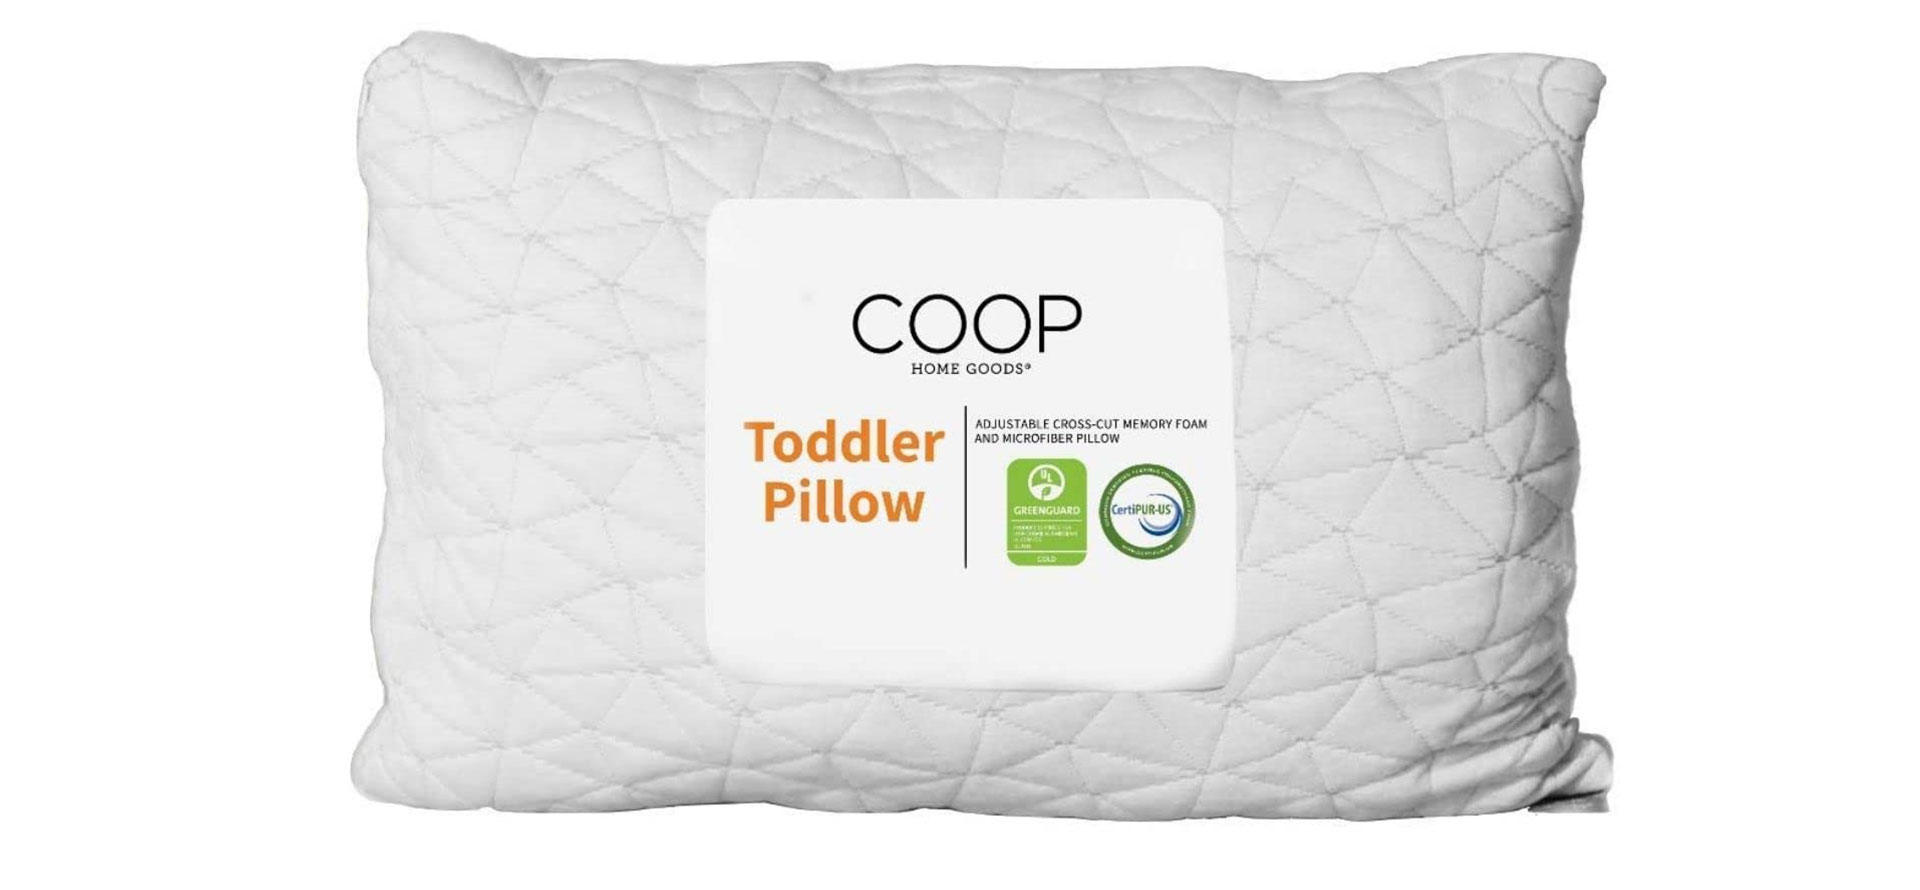 Coop toddler pillow.